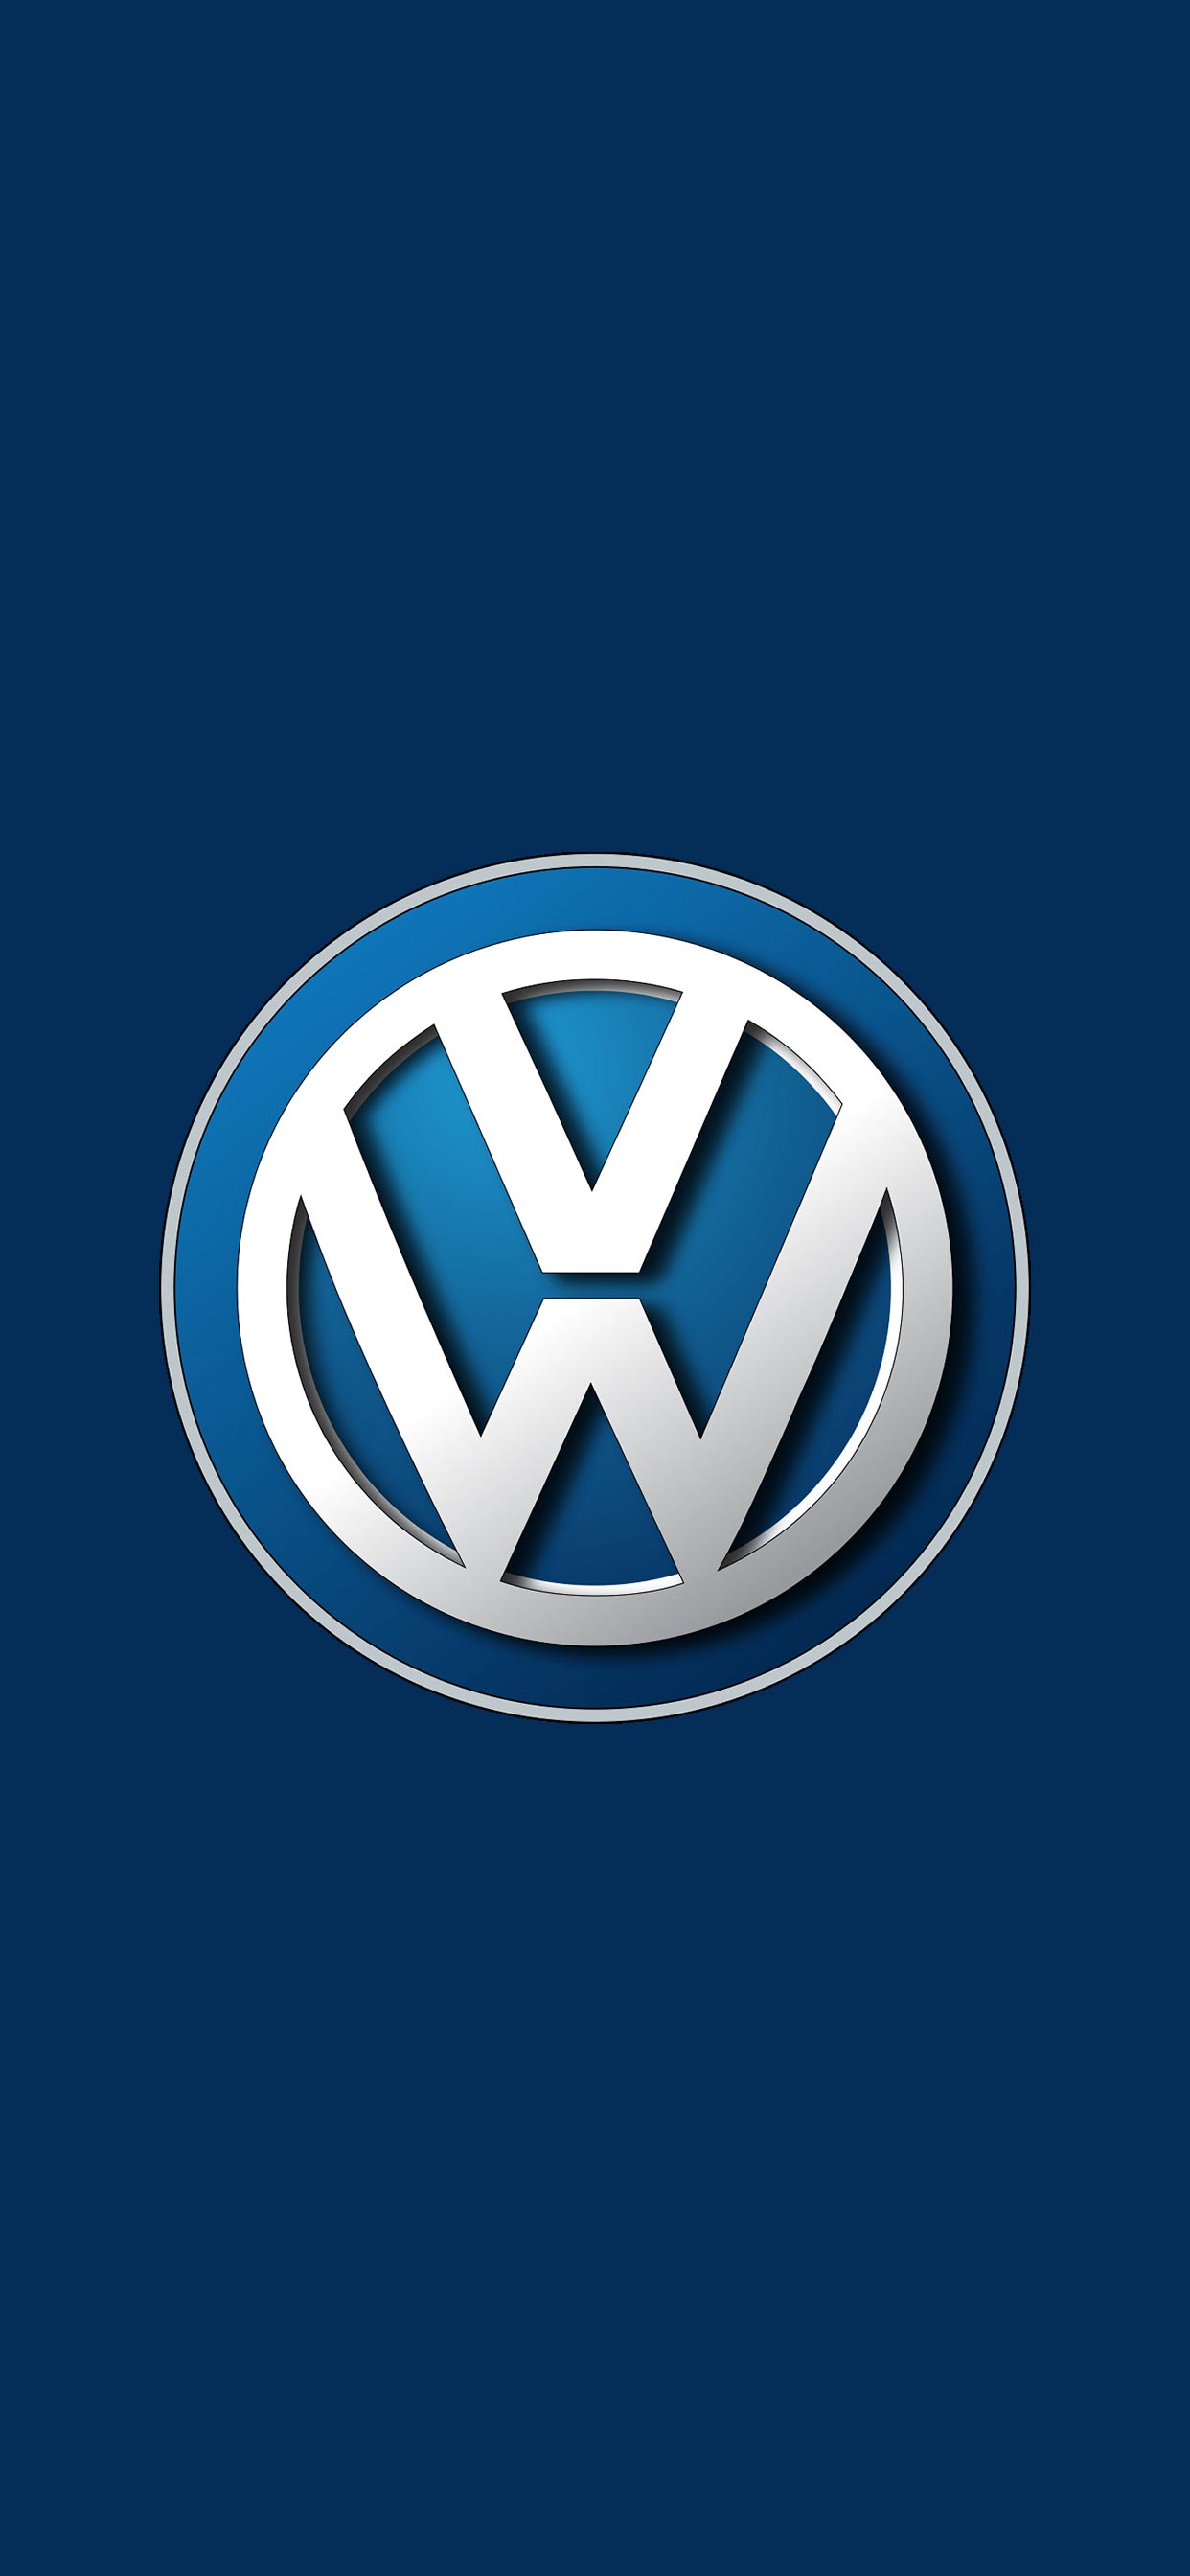 フォルクスワーゲン Volkswagen ロゴ の無料待ち受け画像 スマホ壁紙 Iphone Android 1 待ち受けparadise